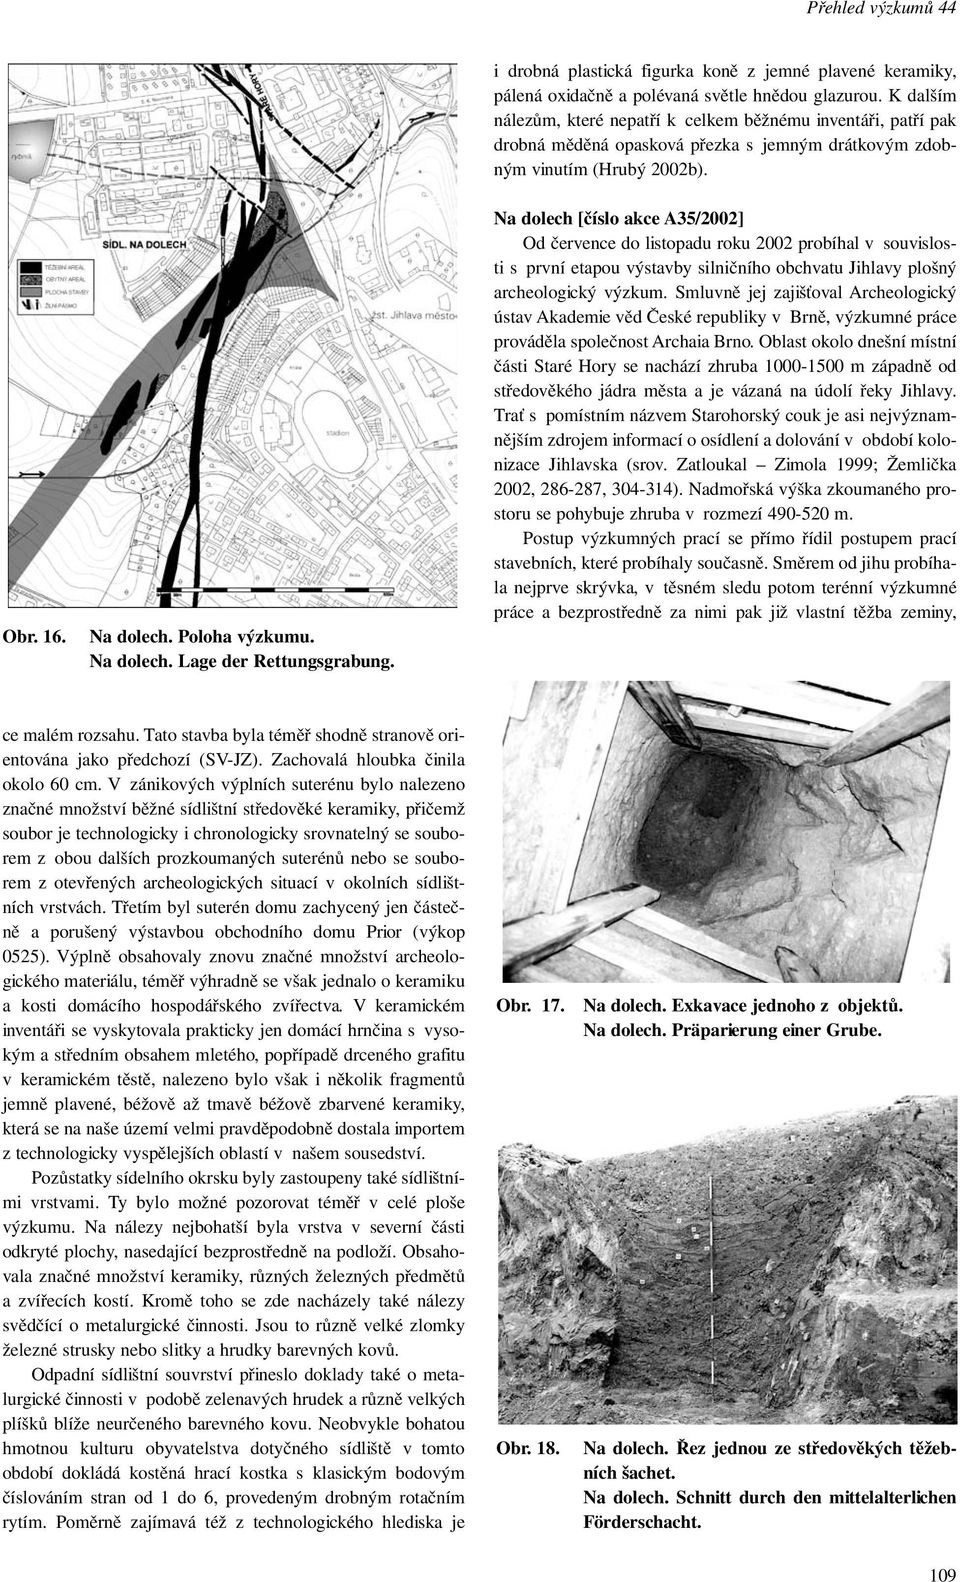 Na dolech [číslo akce A35/2002] Od července do listopadu roku 2002 probíhal v souvislosti s první etapou výstavby silničního obchvatu Jihlavy plošný archeologický výzkum.